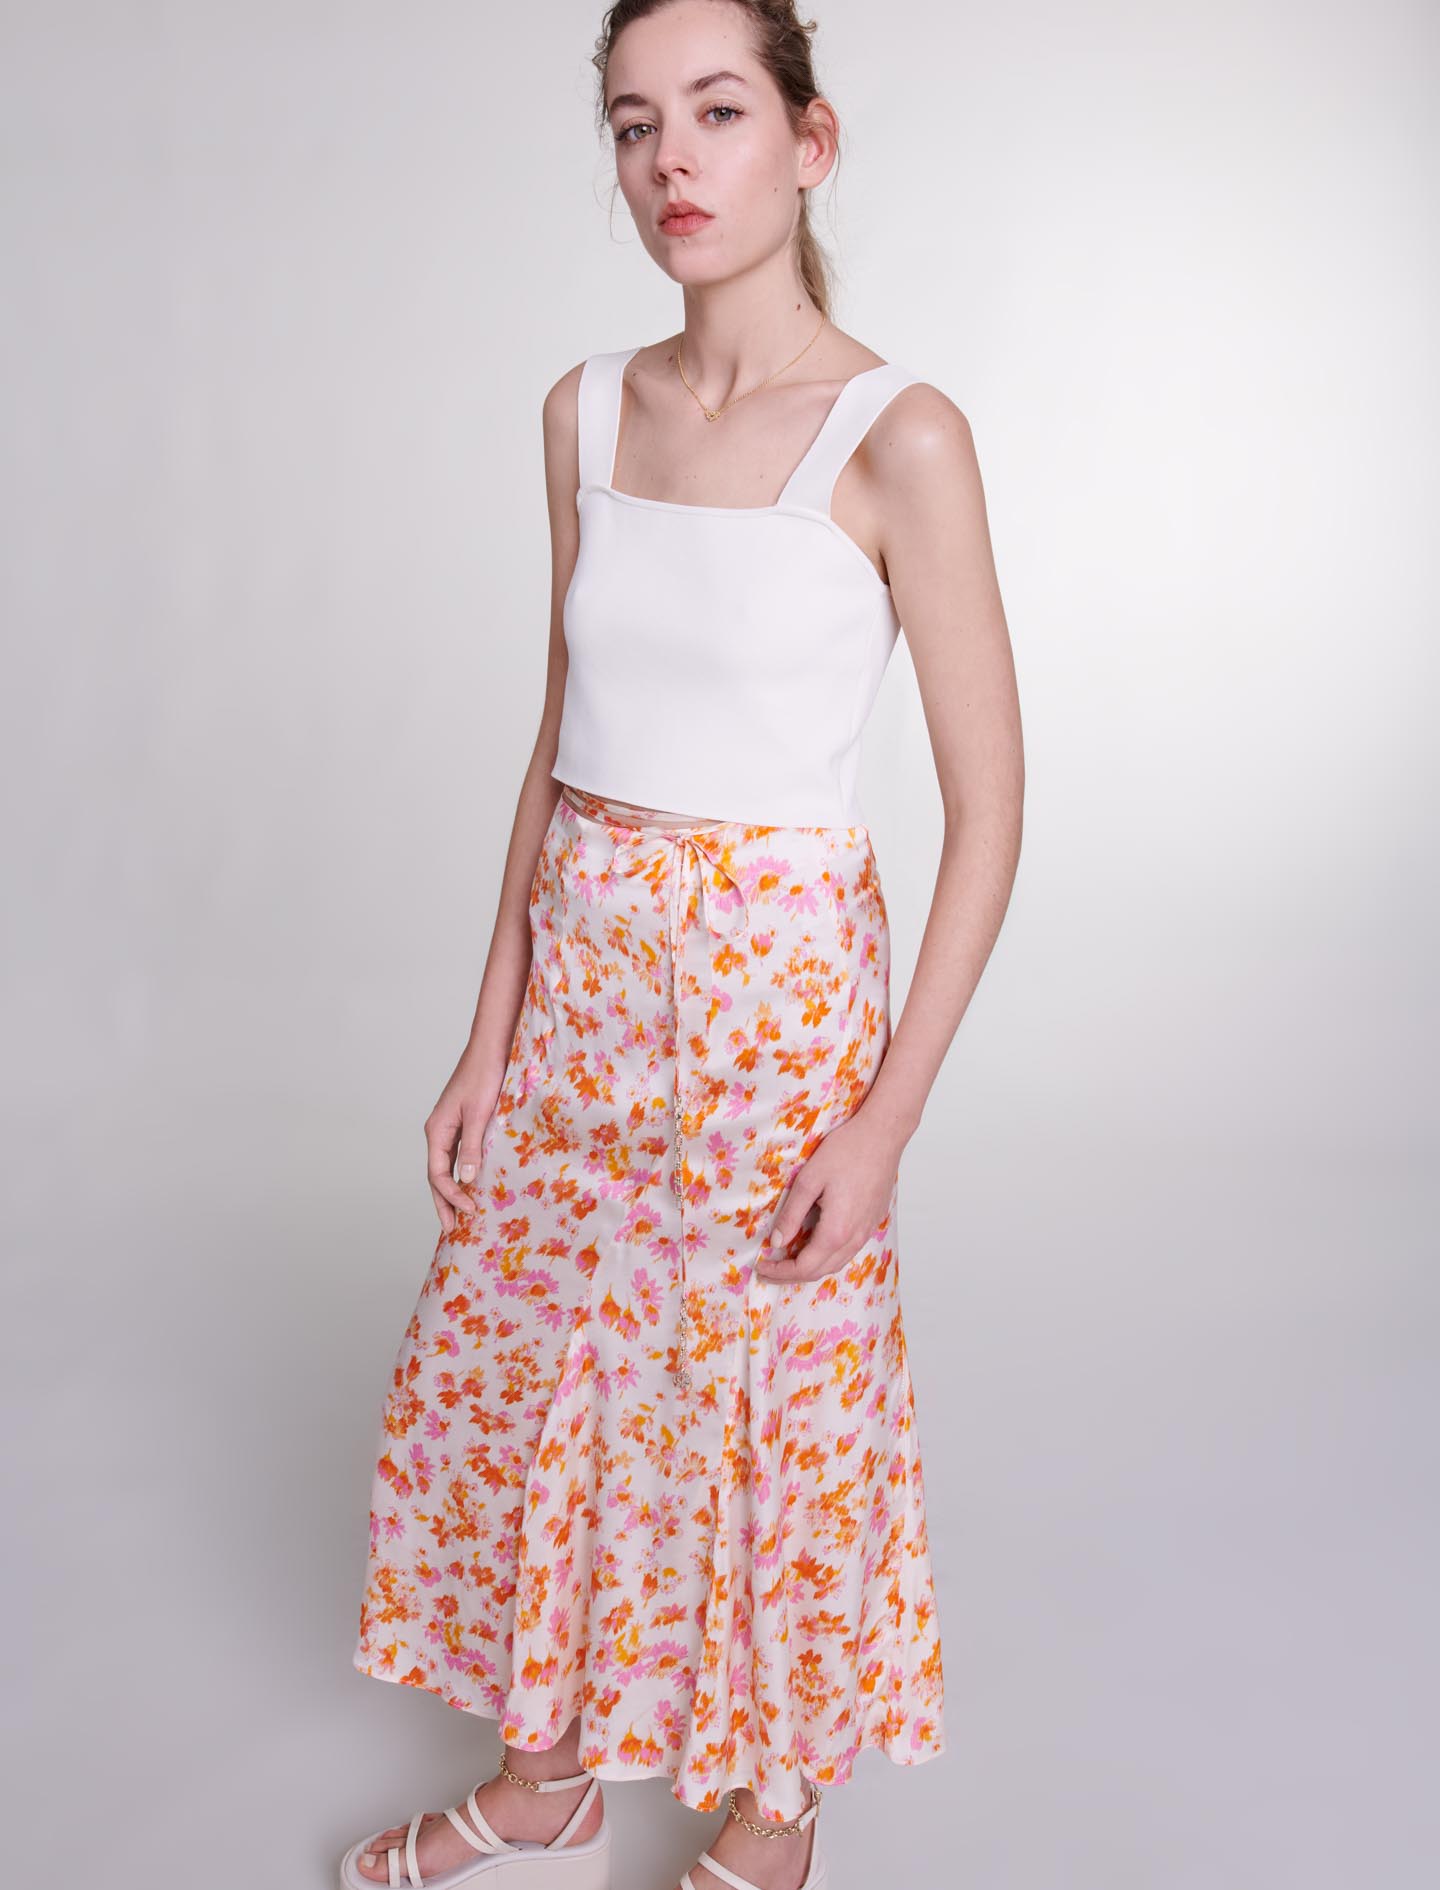 Satin effect floral skirt - Orange